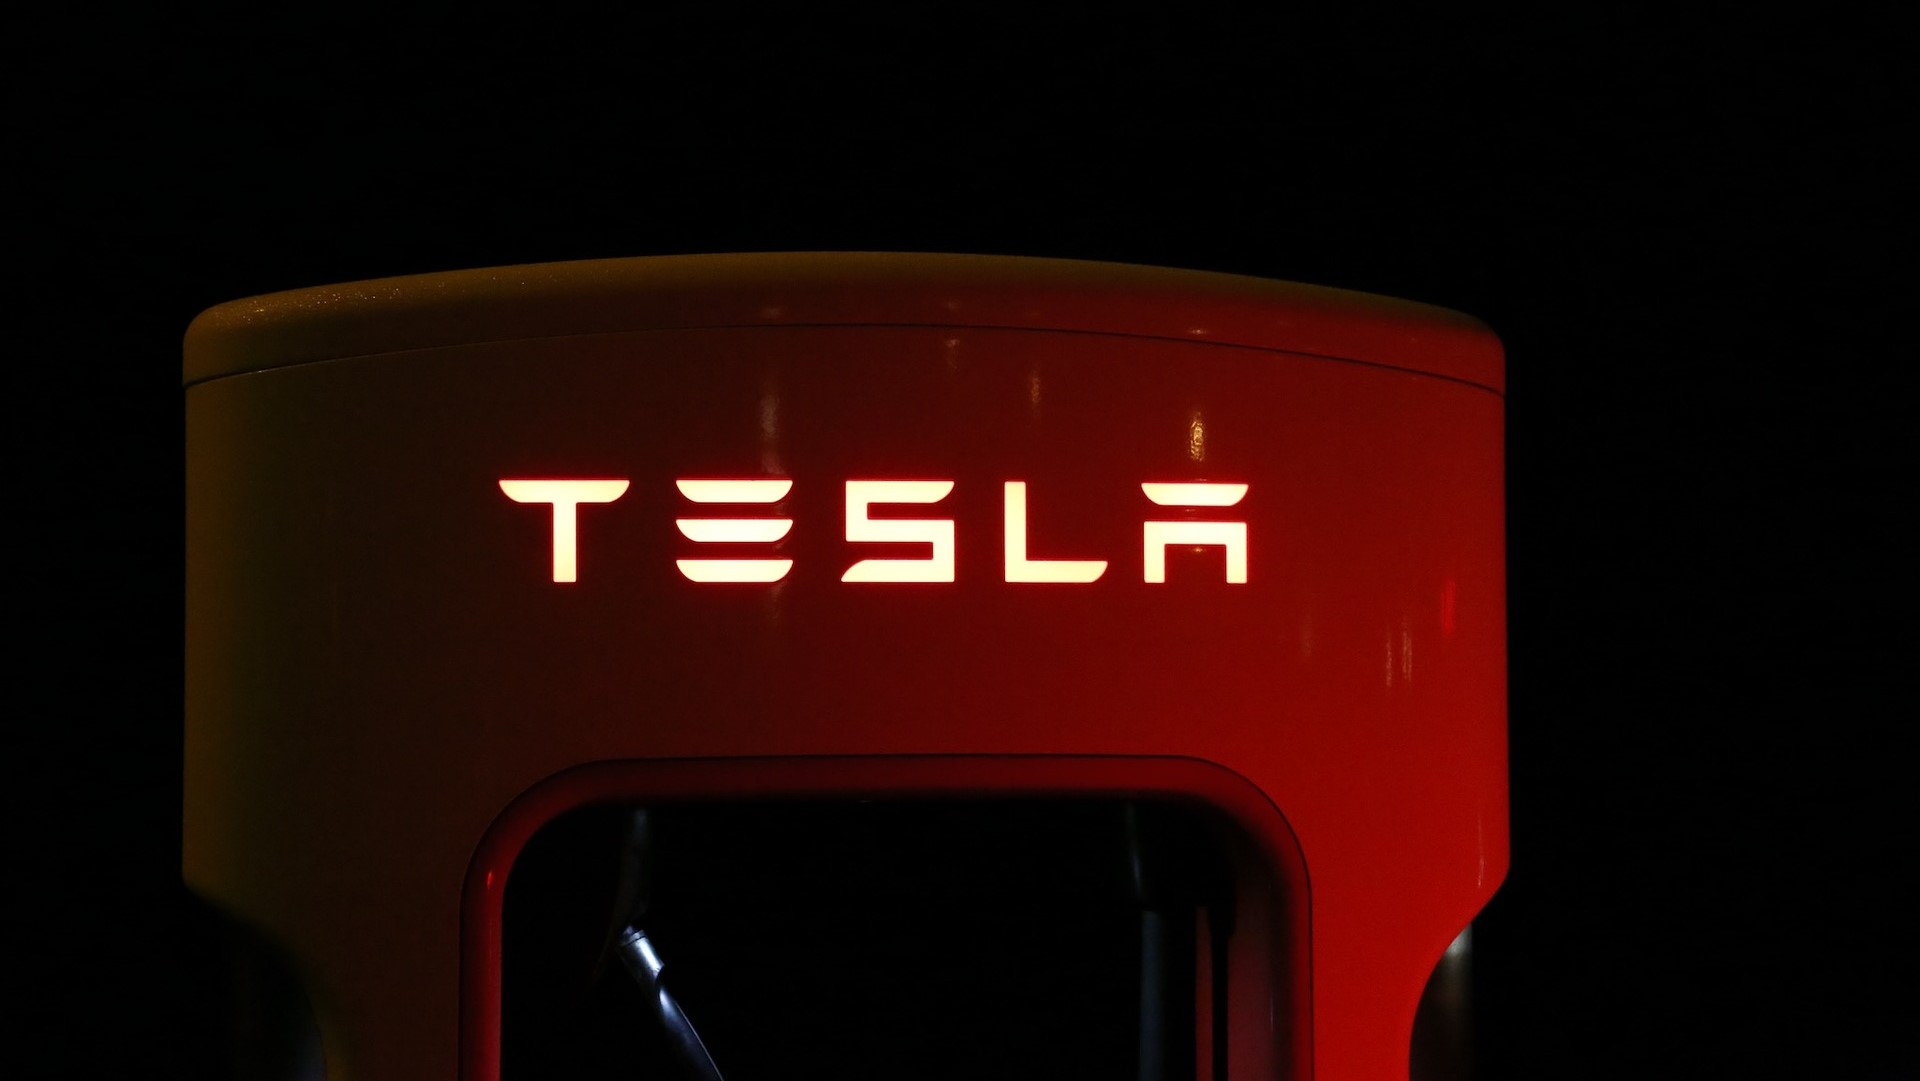 Consumer Reports ทดสอบ Autopilot ของ Tesla ทำงานได้จริง ส่วนเหตุรถชนเกิดเพราะคนขับพลาด